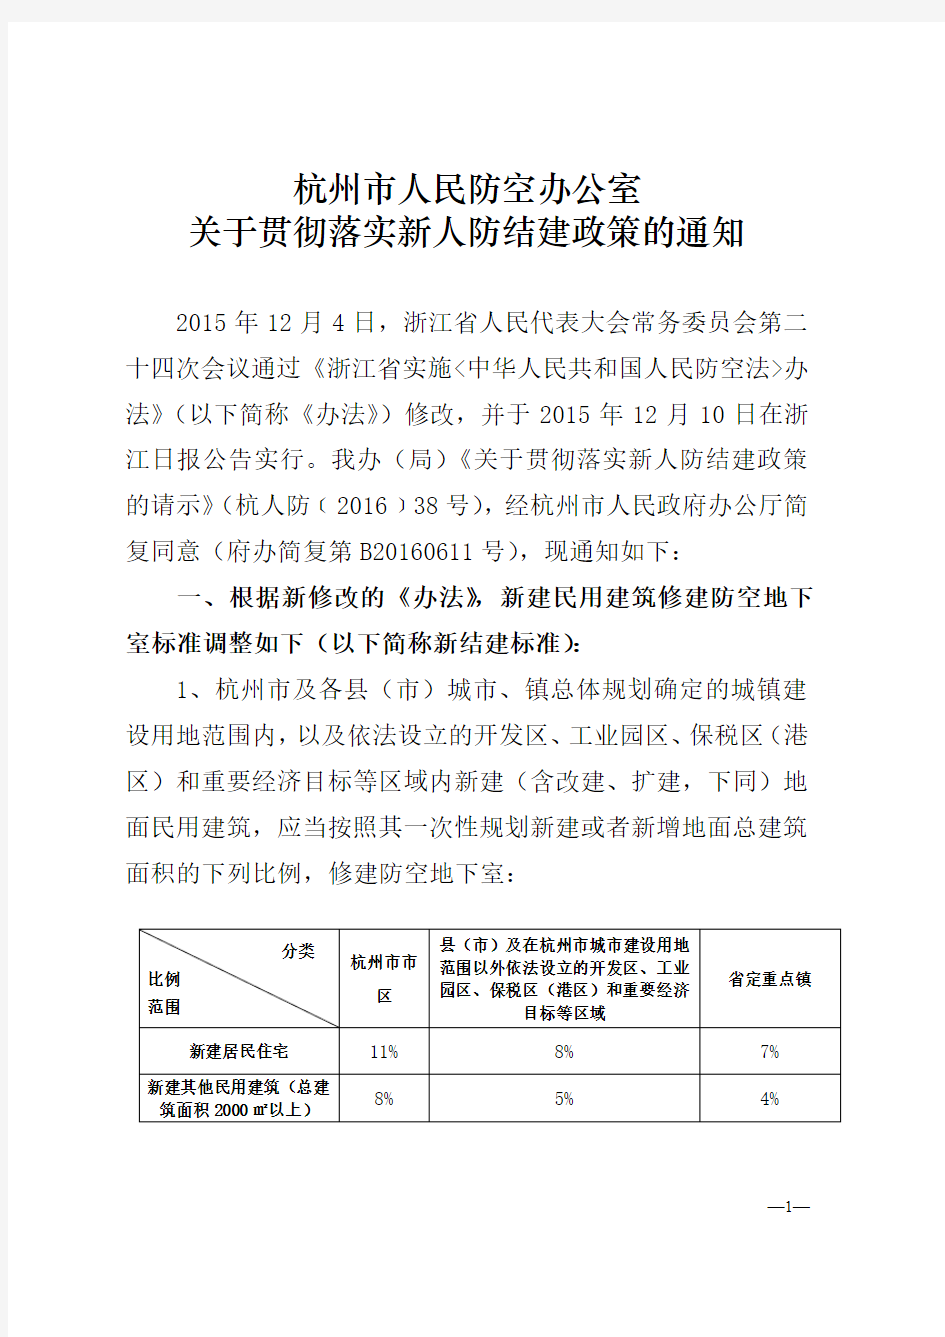 杭州市人民防空办公室关于贯彻落实新人防结建政策的通知